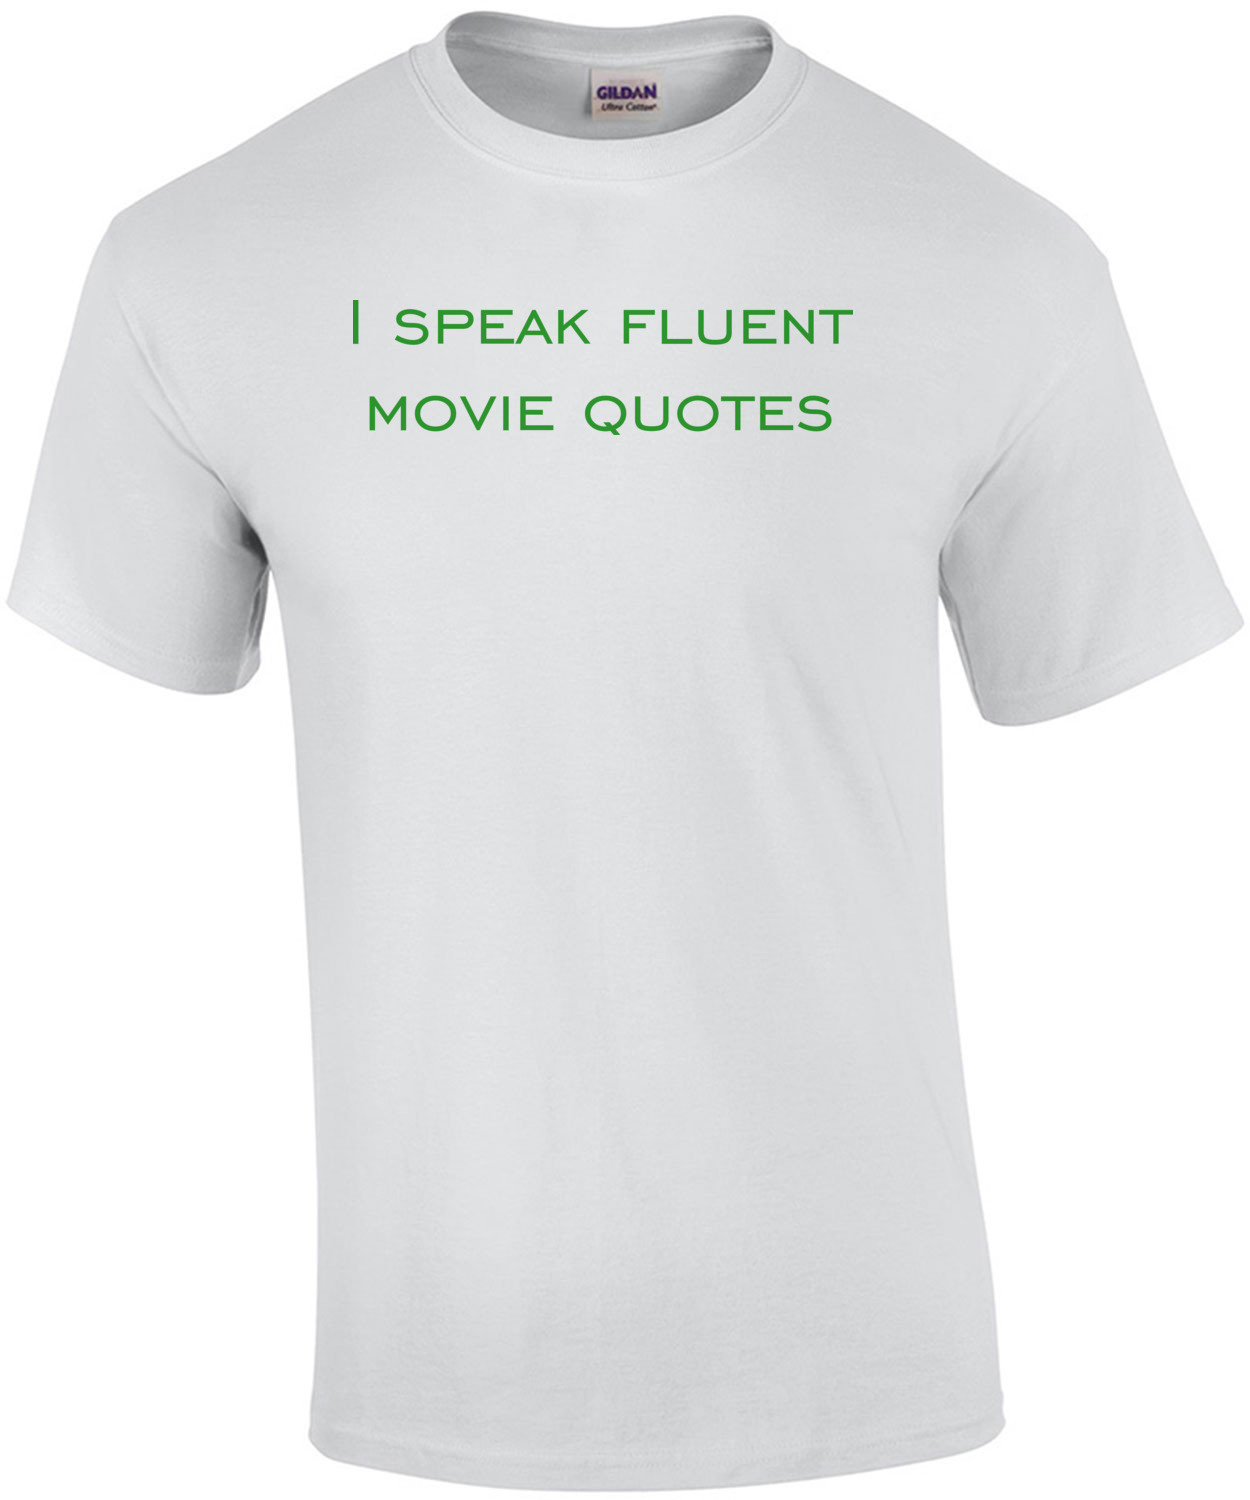 I speak fluent movie quotes funny